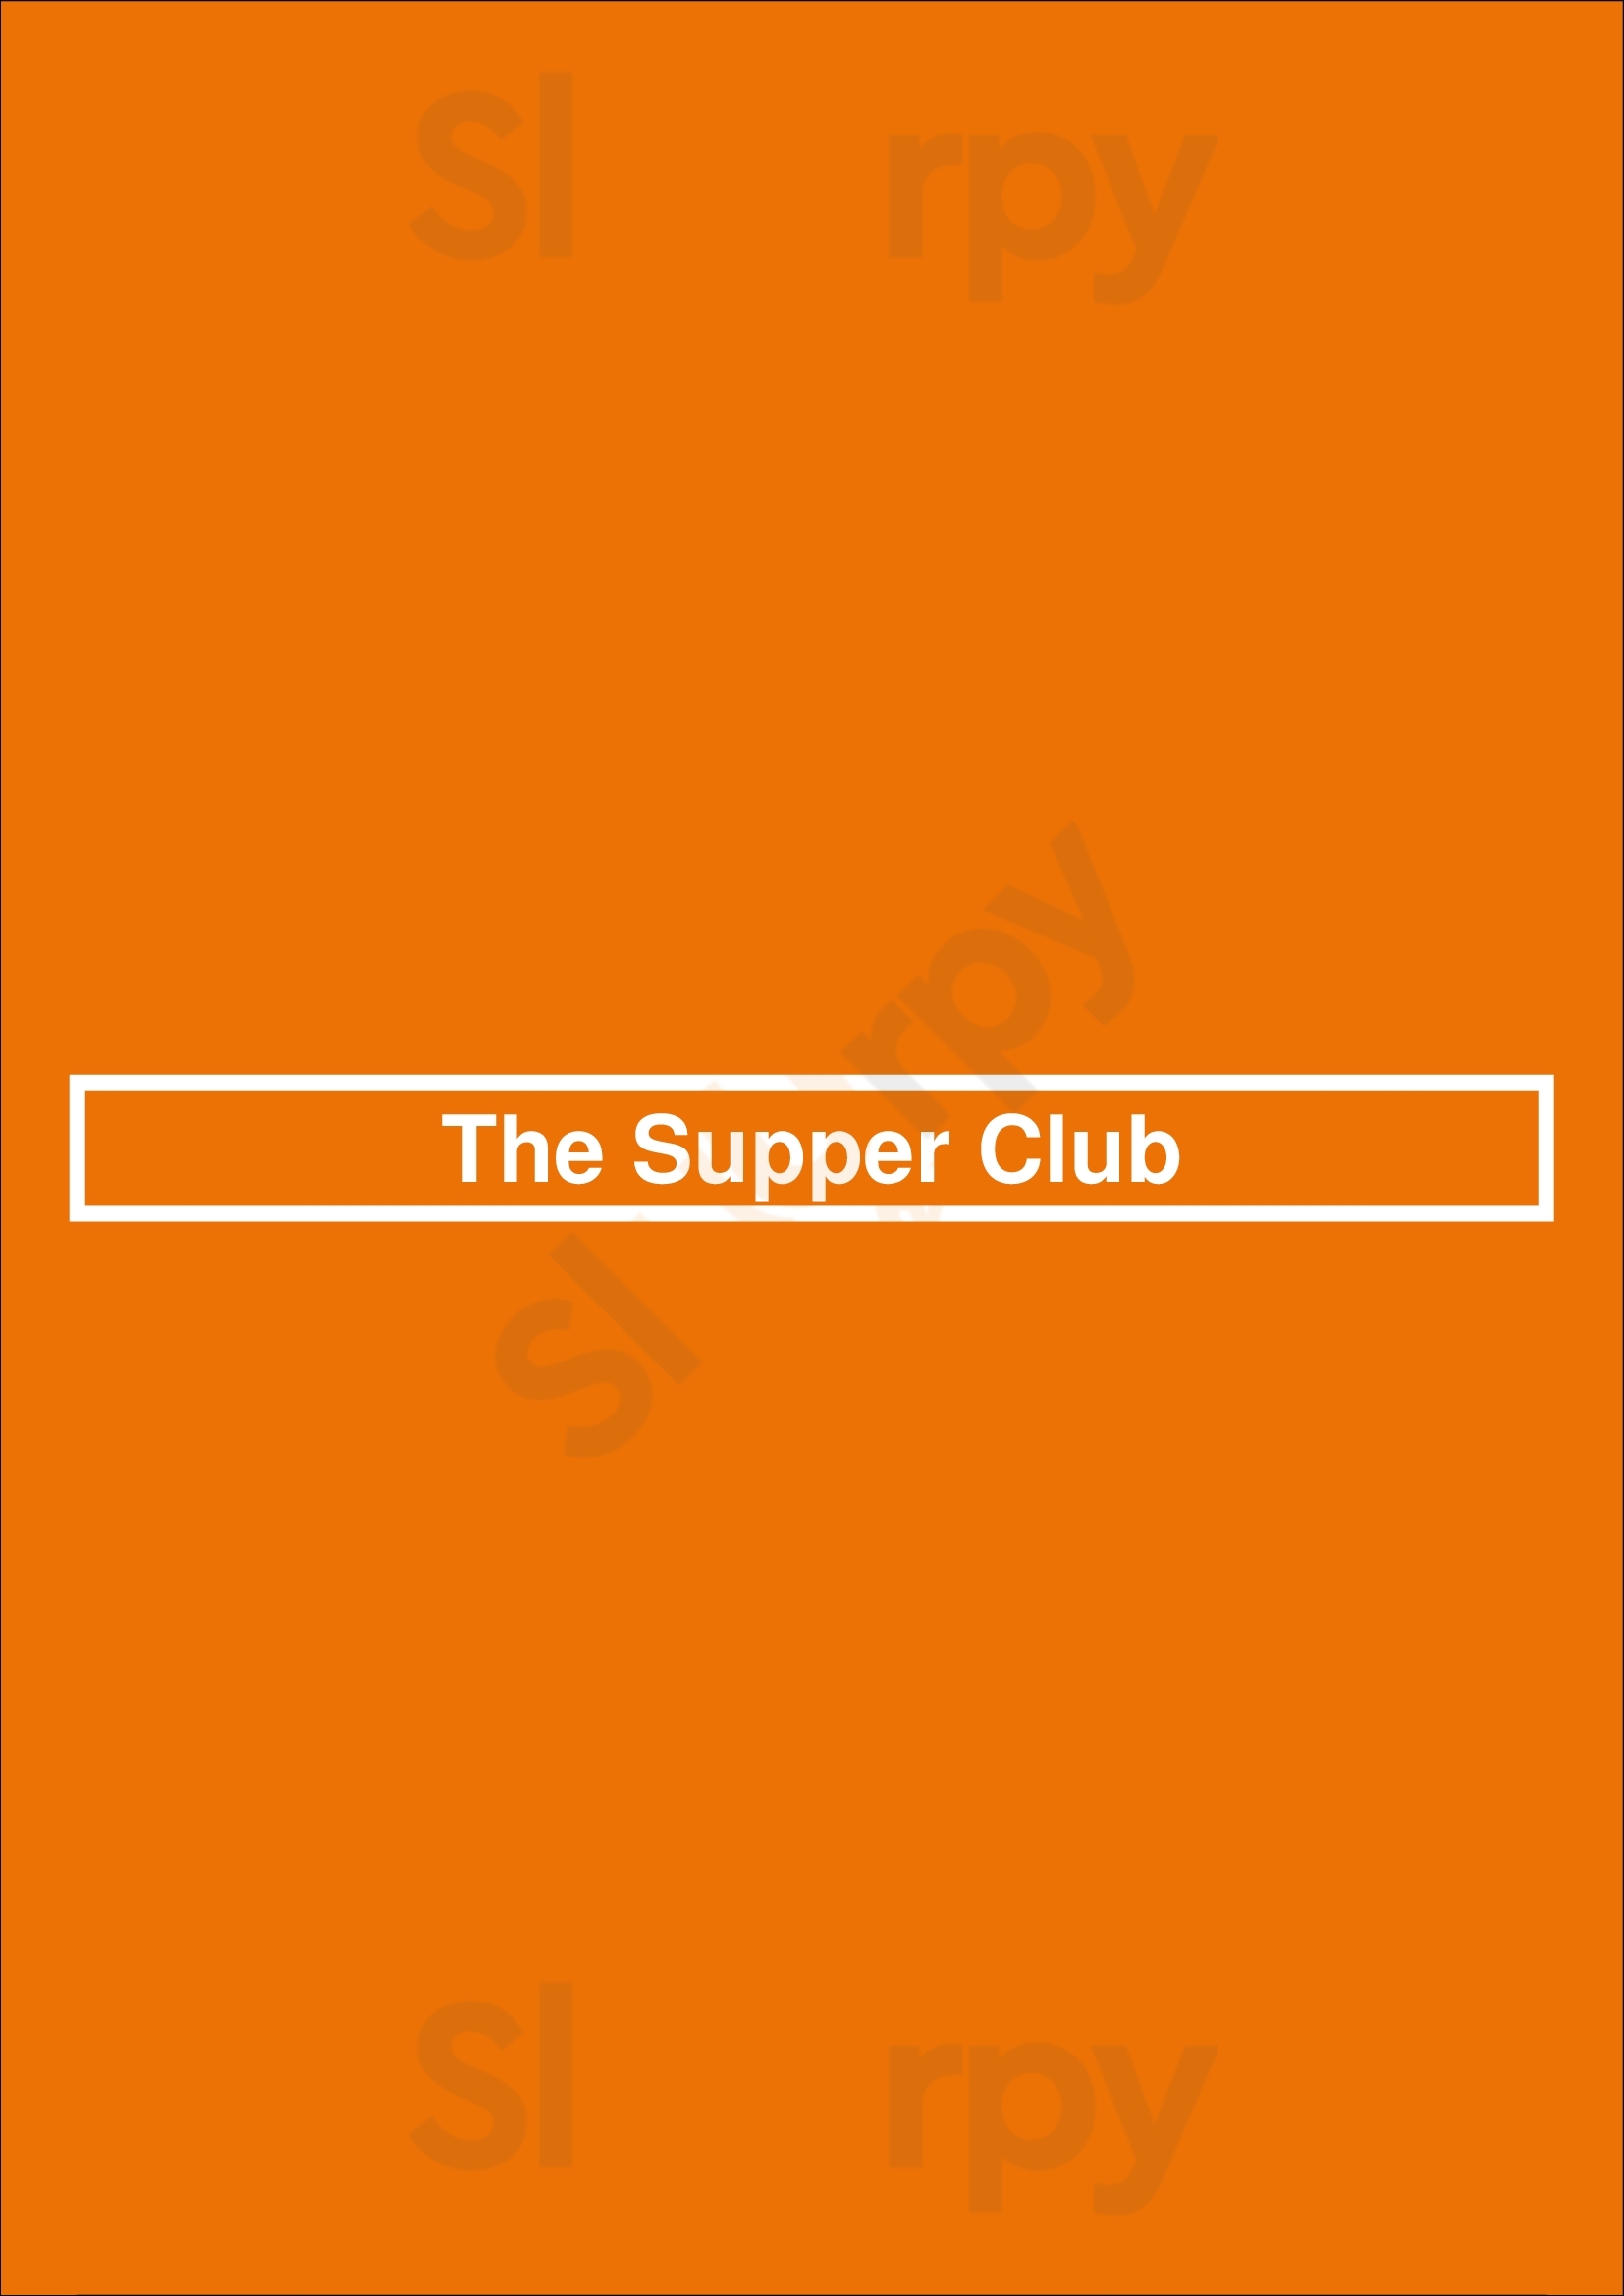 The Supper Club Wakefield Menu - 1